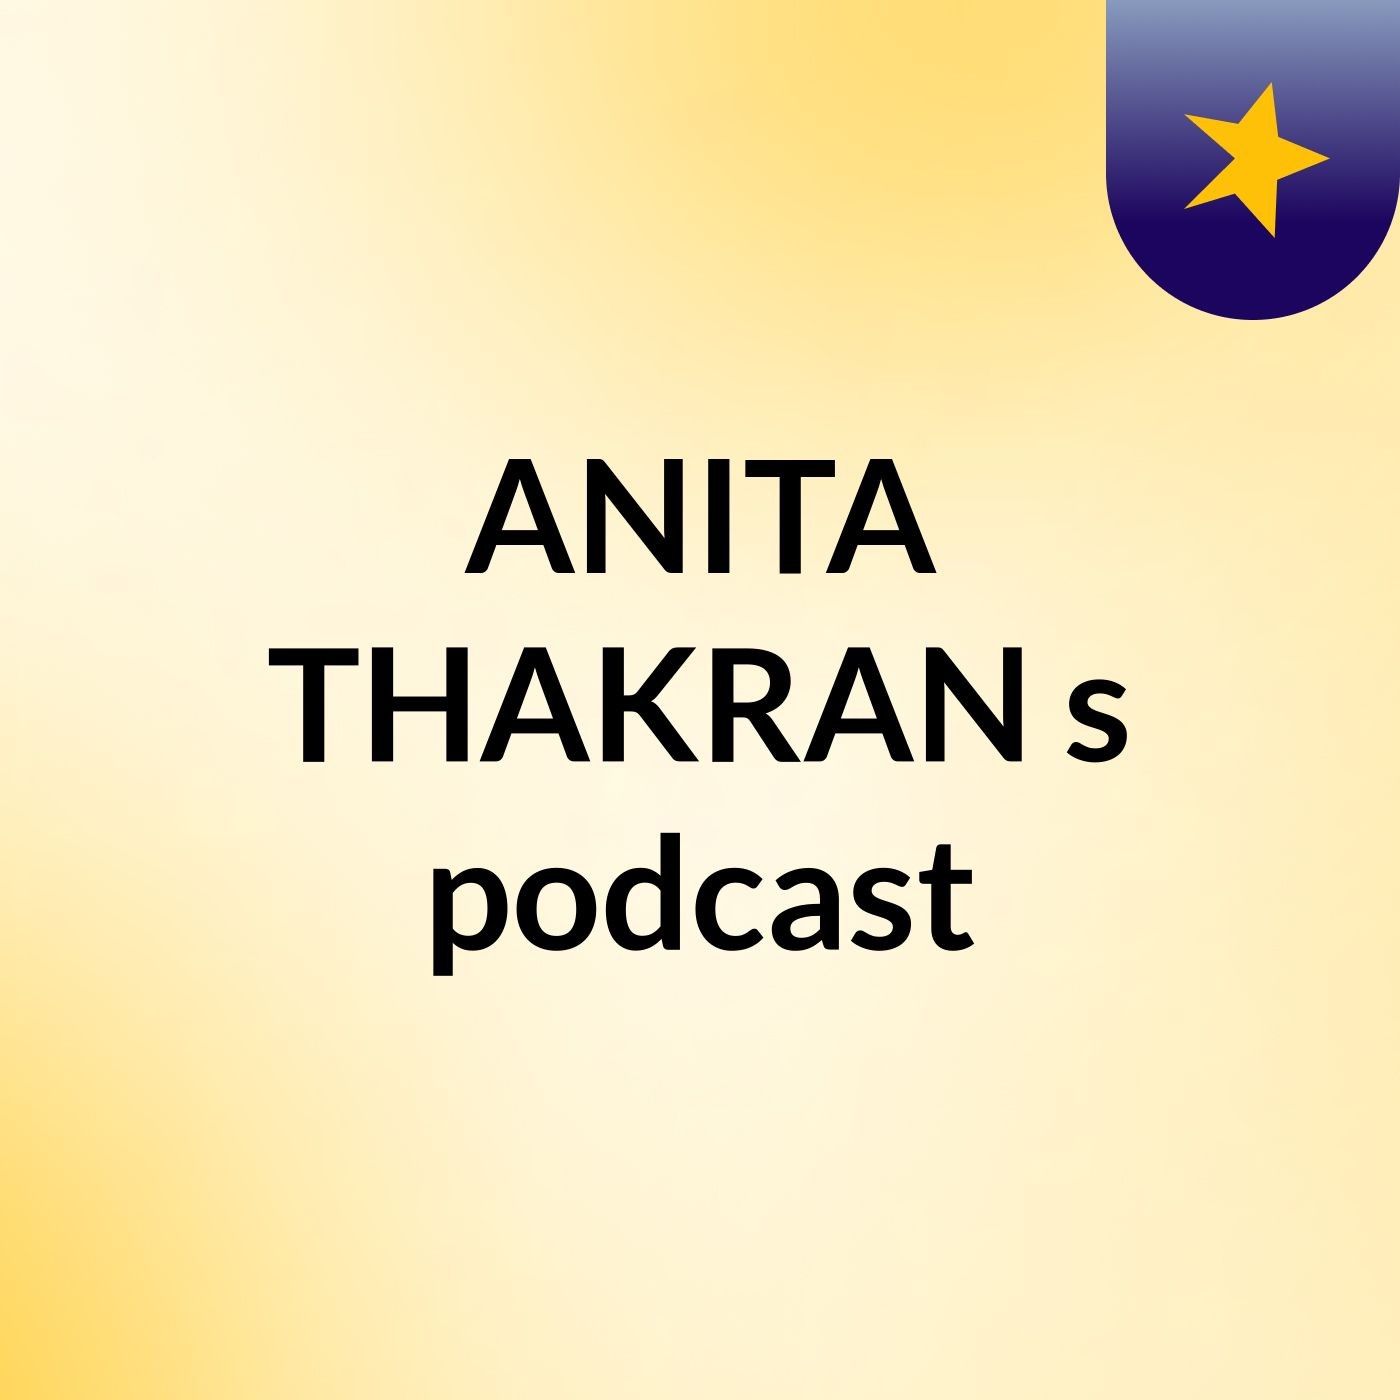 Episode 2 - ANITA THAKRAN's podcast